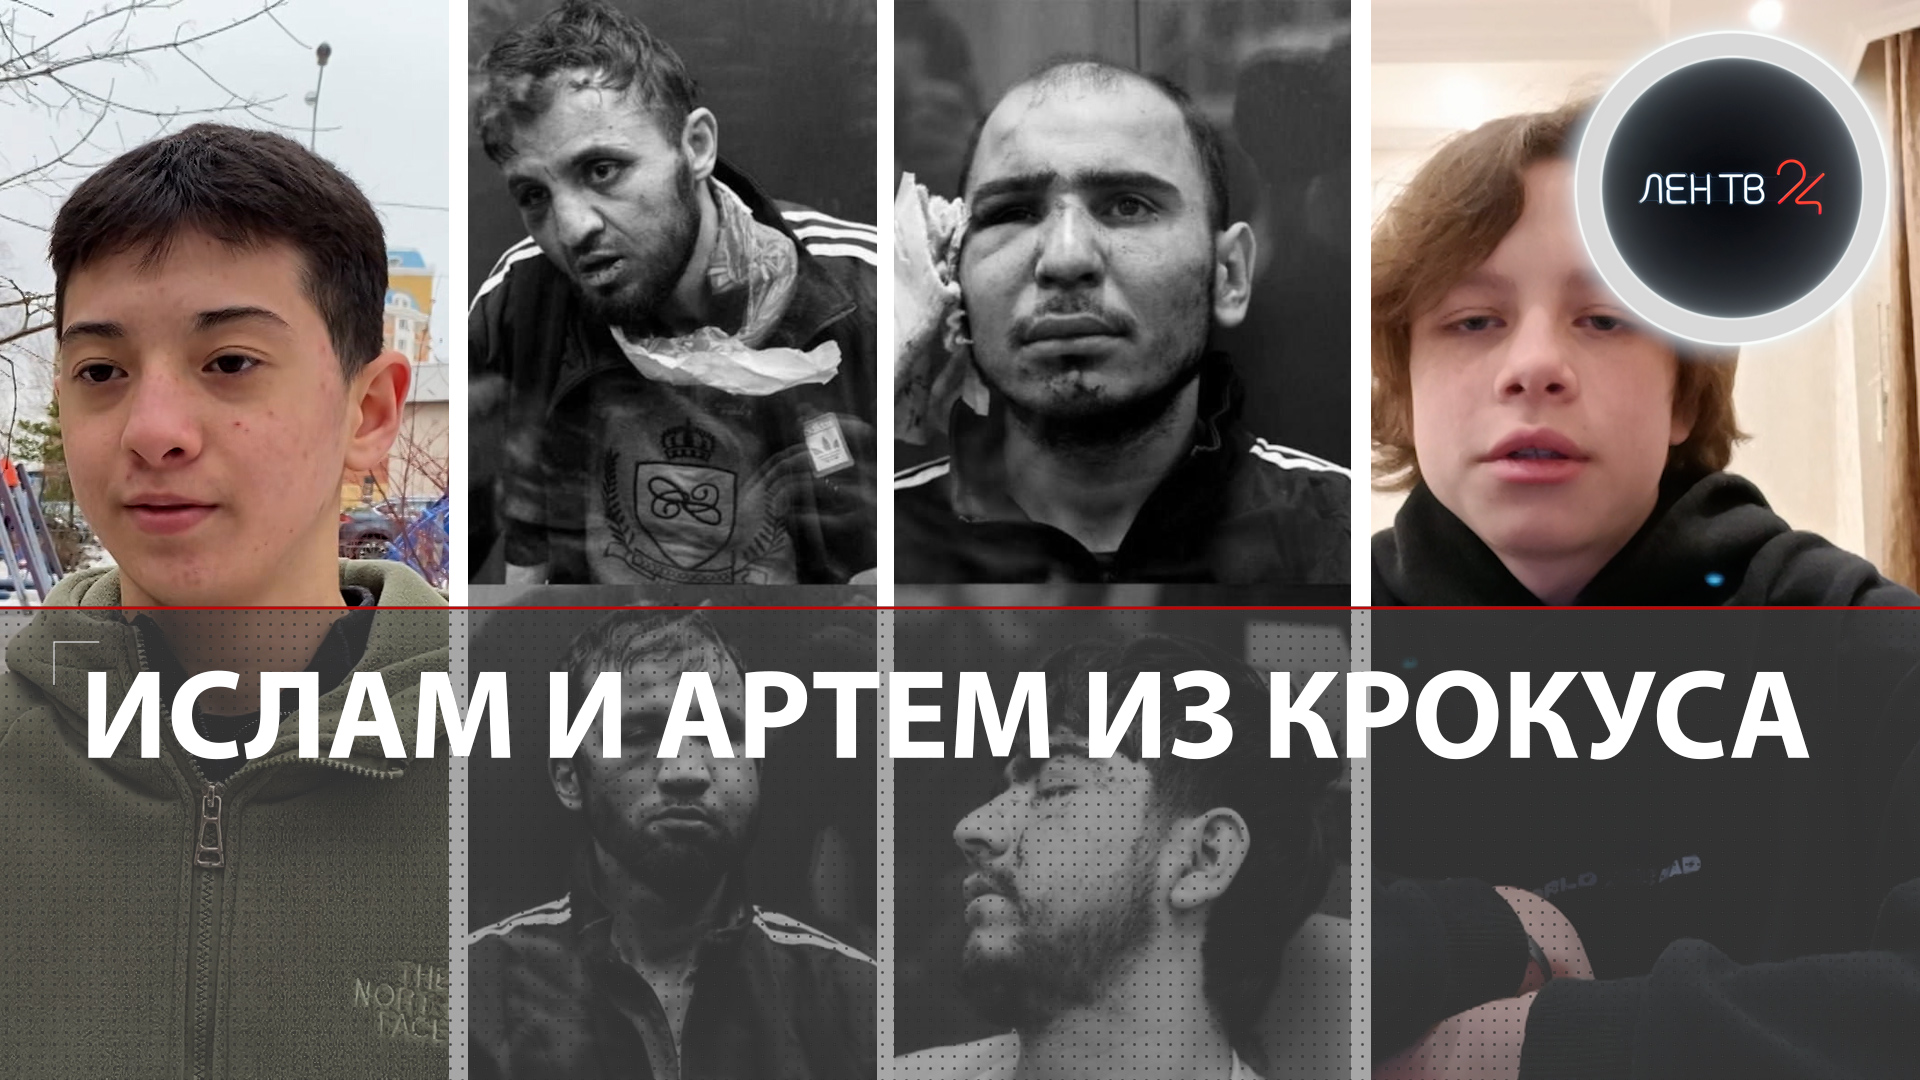 Кто организовал теракт в Москве? | Юных гардеробщиков из Крокуса наградили | Боевиков арестовали